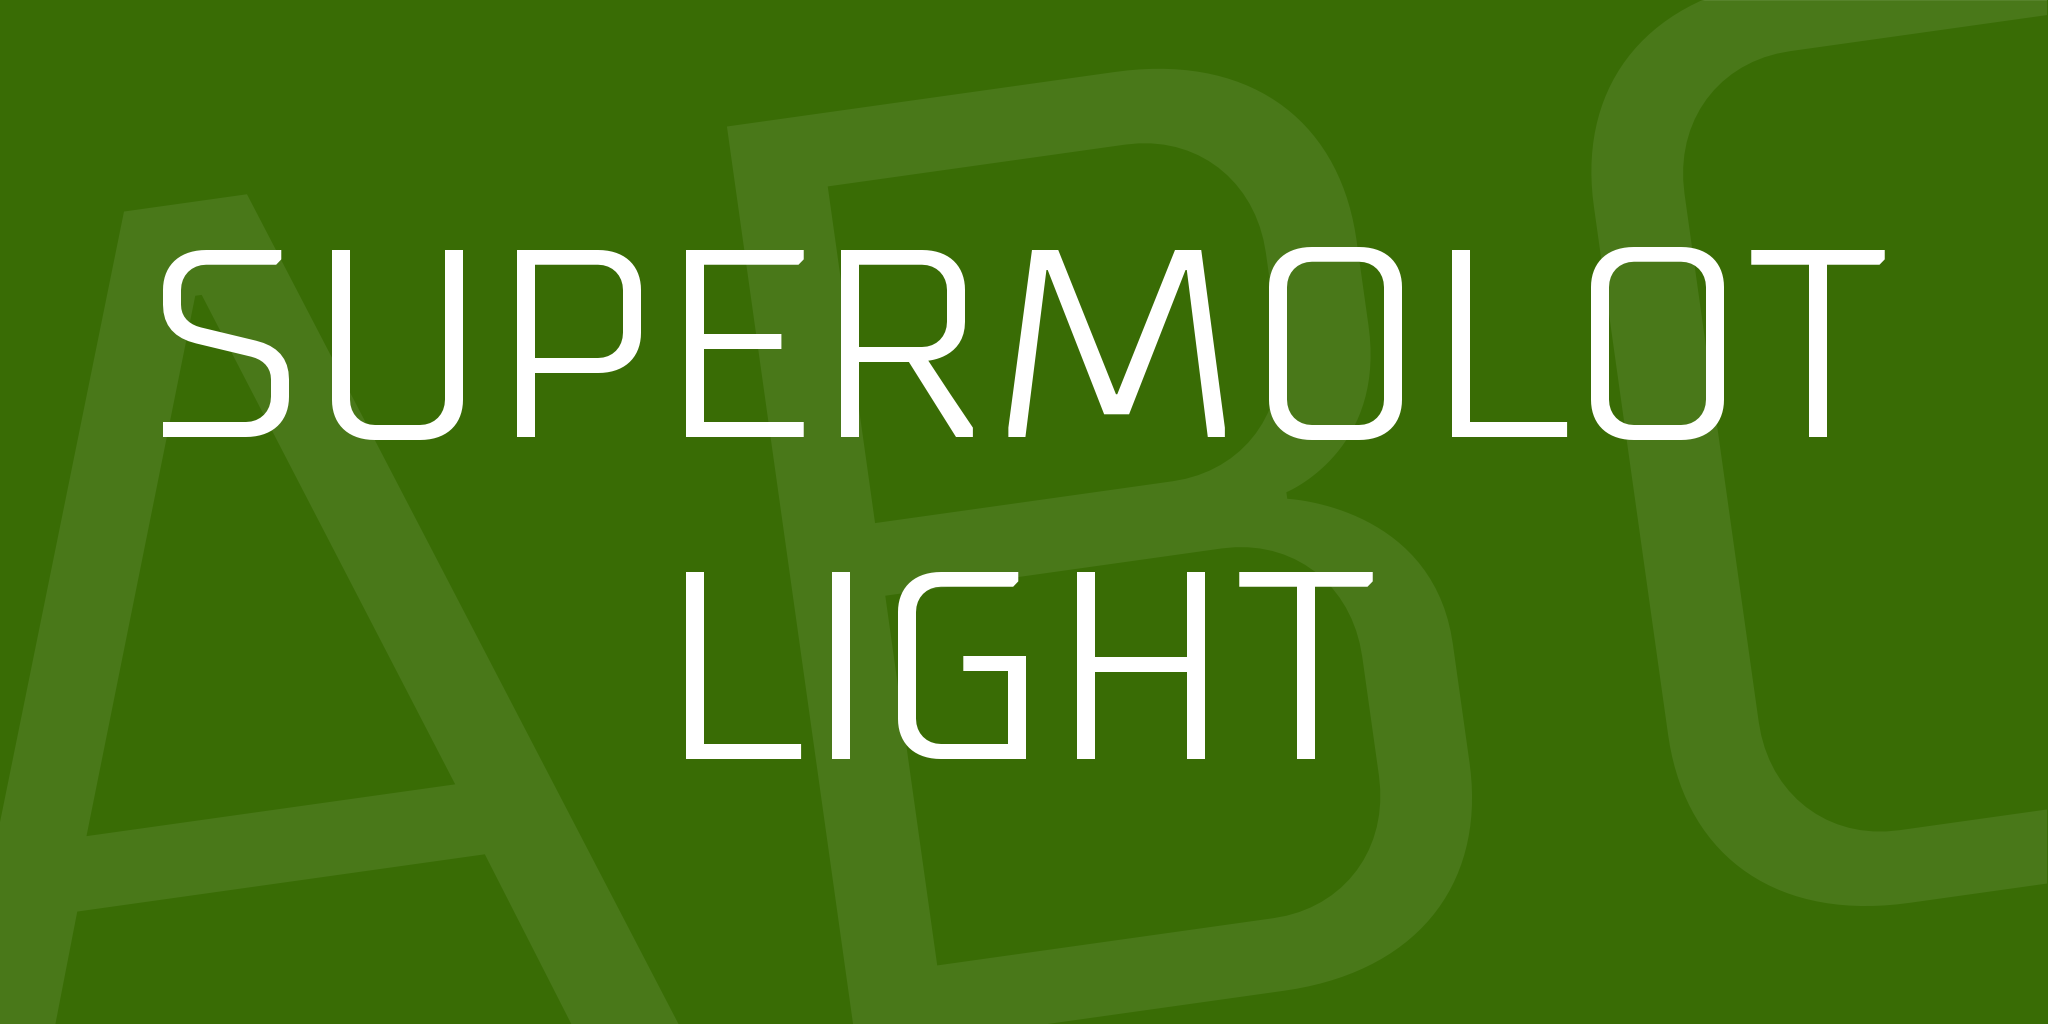 Supermolot Light